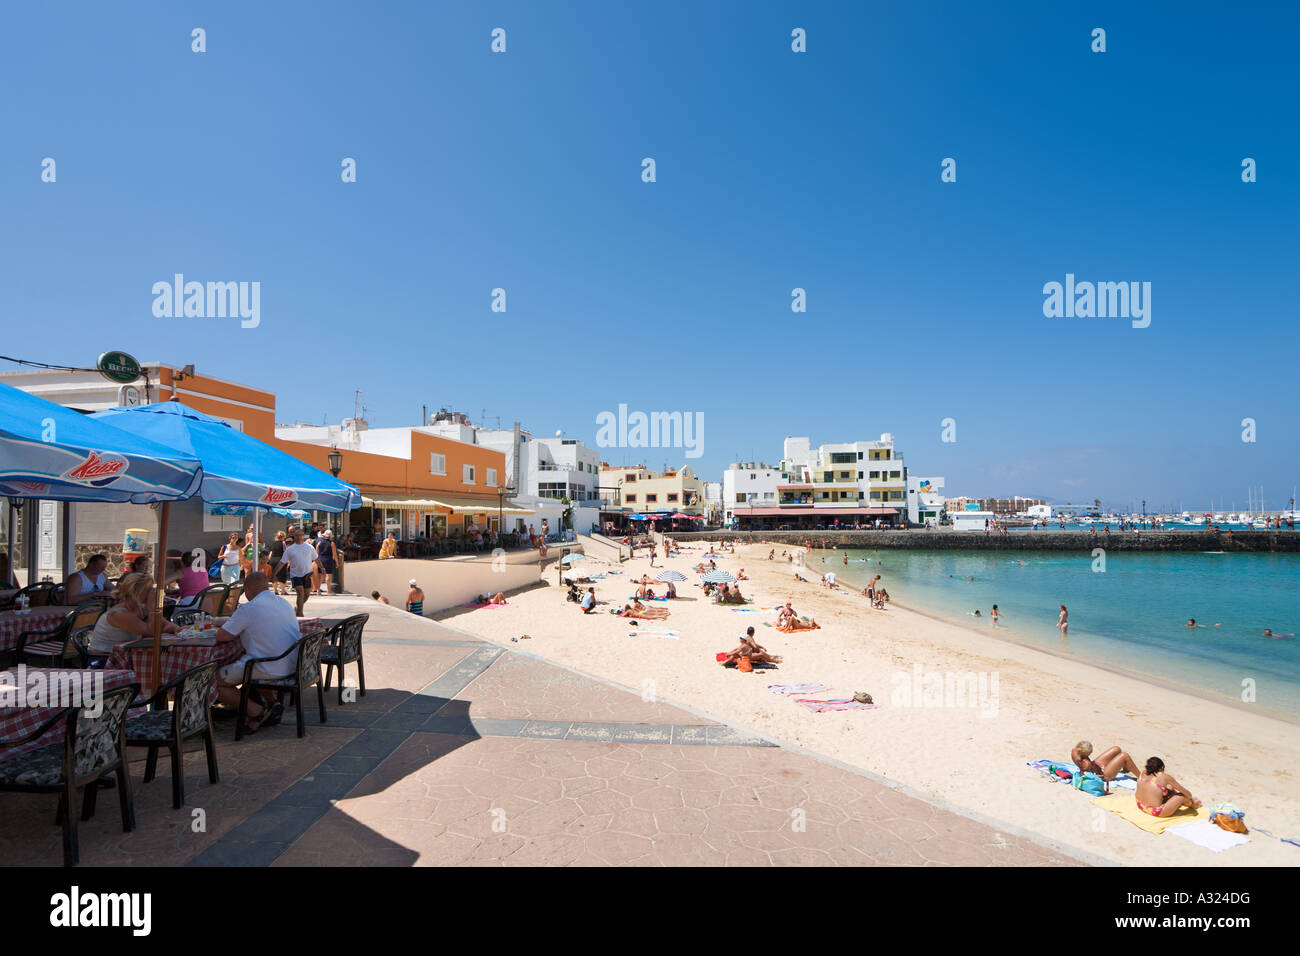 Plage, promenade et cafe au centre de la station, Corralejo, Fuerteventura, Îles Canaries, Espagne Banque D'Images